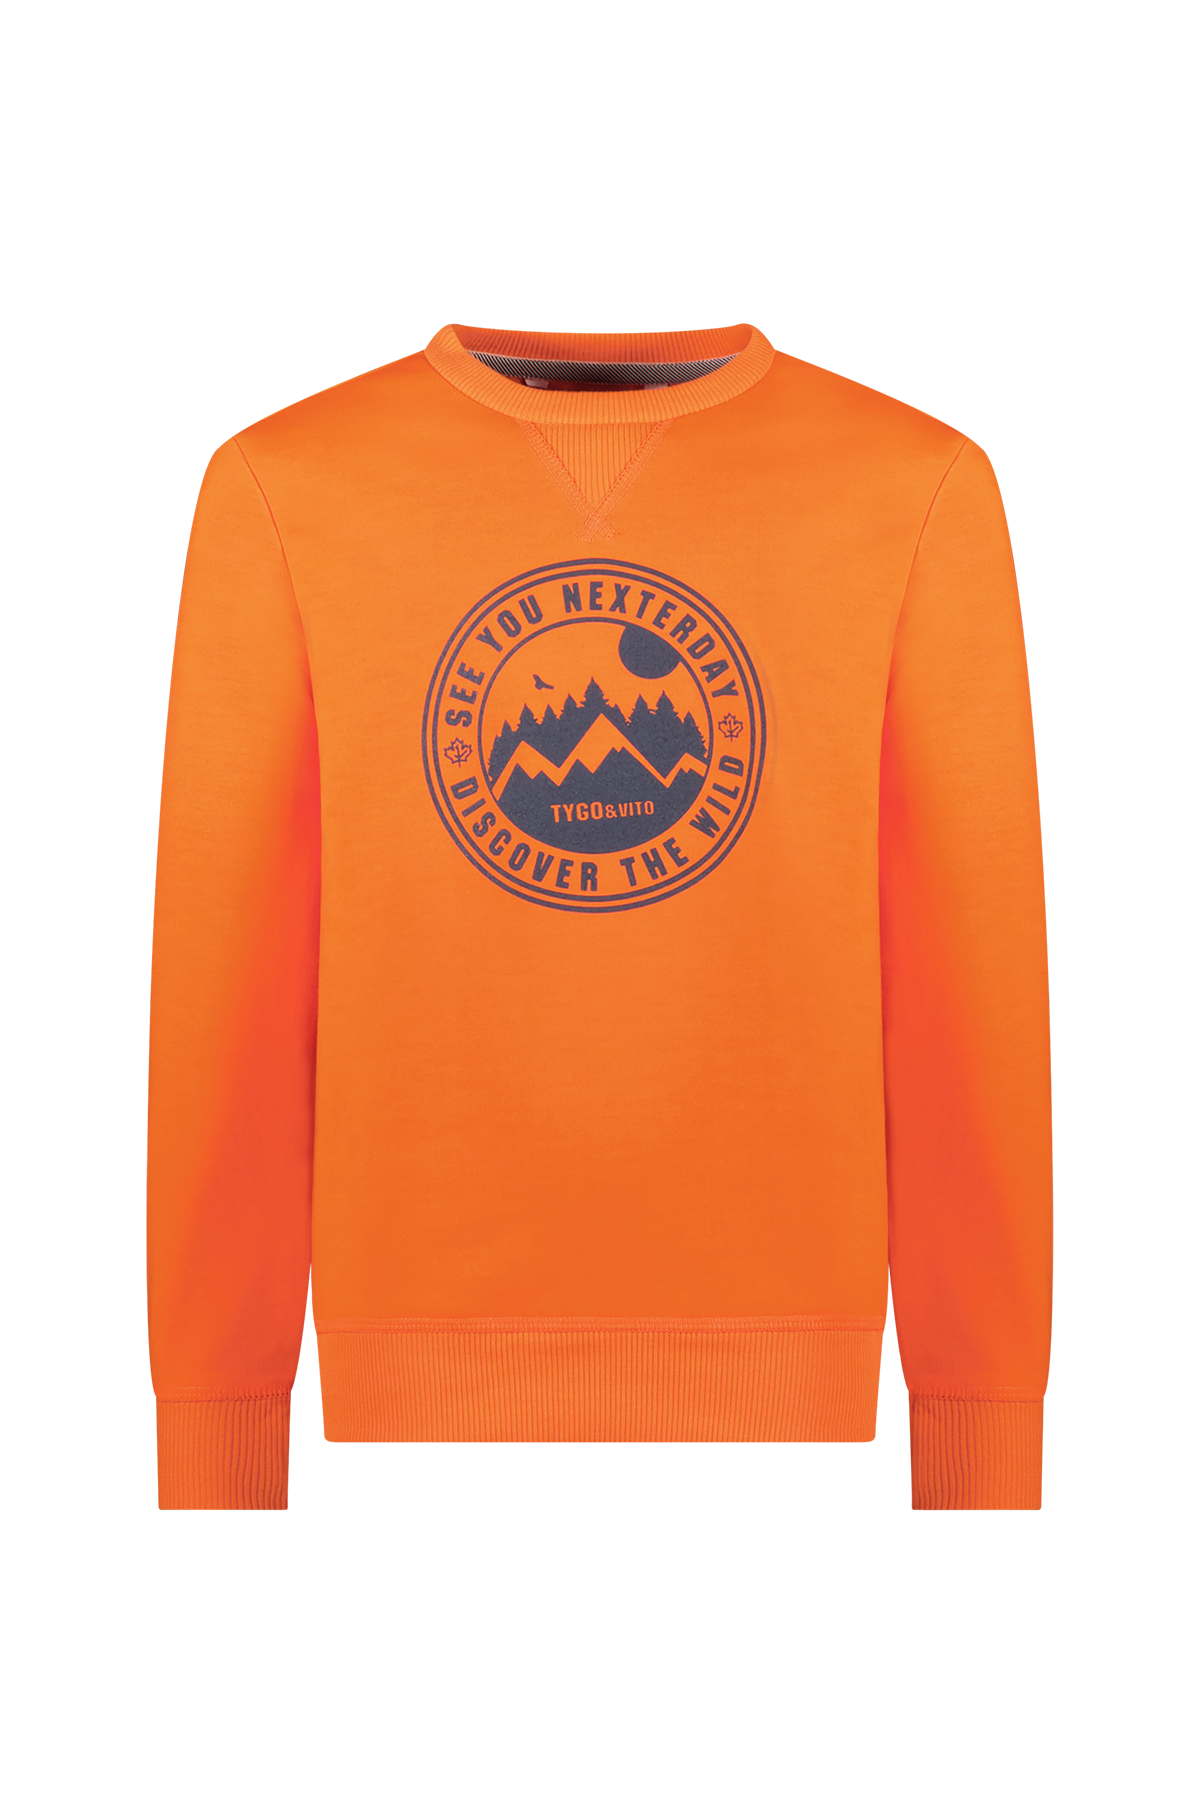 Trui / Sweater Sweater neon Samir  neon oranje